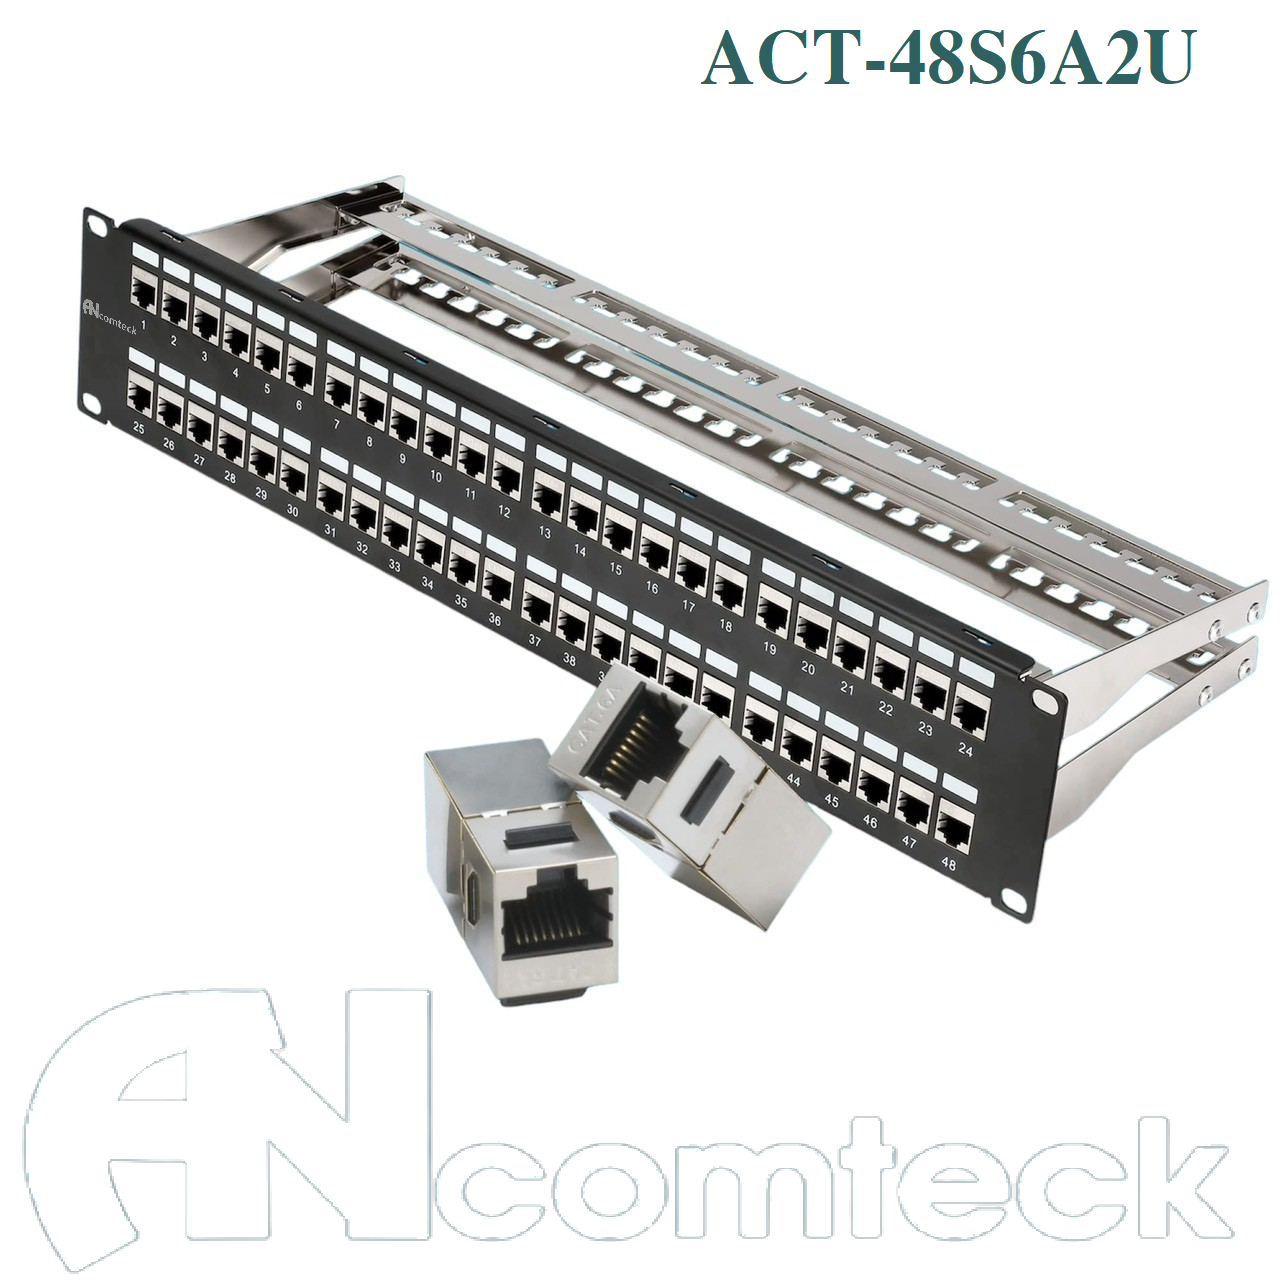 Thanh đấu nối mạng PATCH PANEL STP 48 cổng CAT6A  mã ACT-48S2U, ACT-6A-88 ANCOMTECK